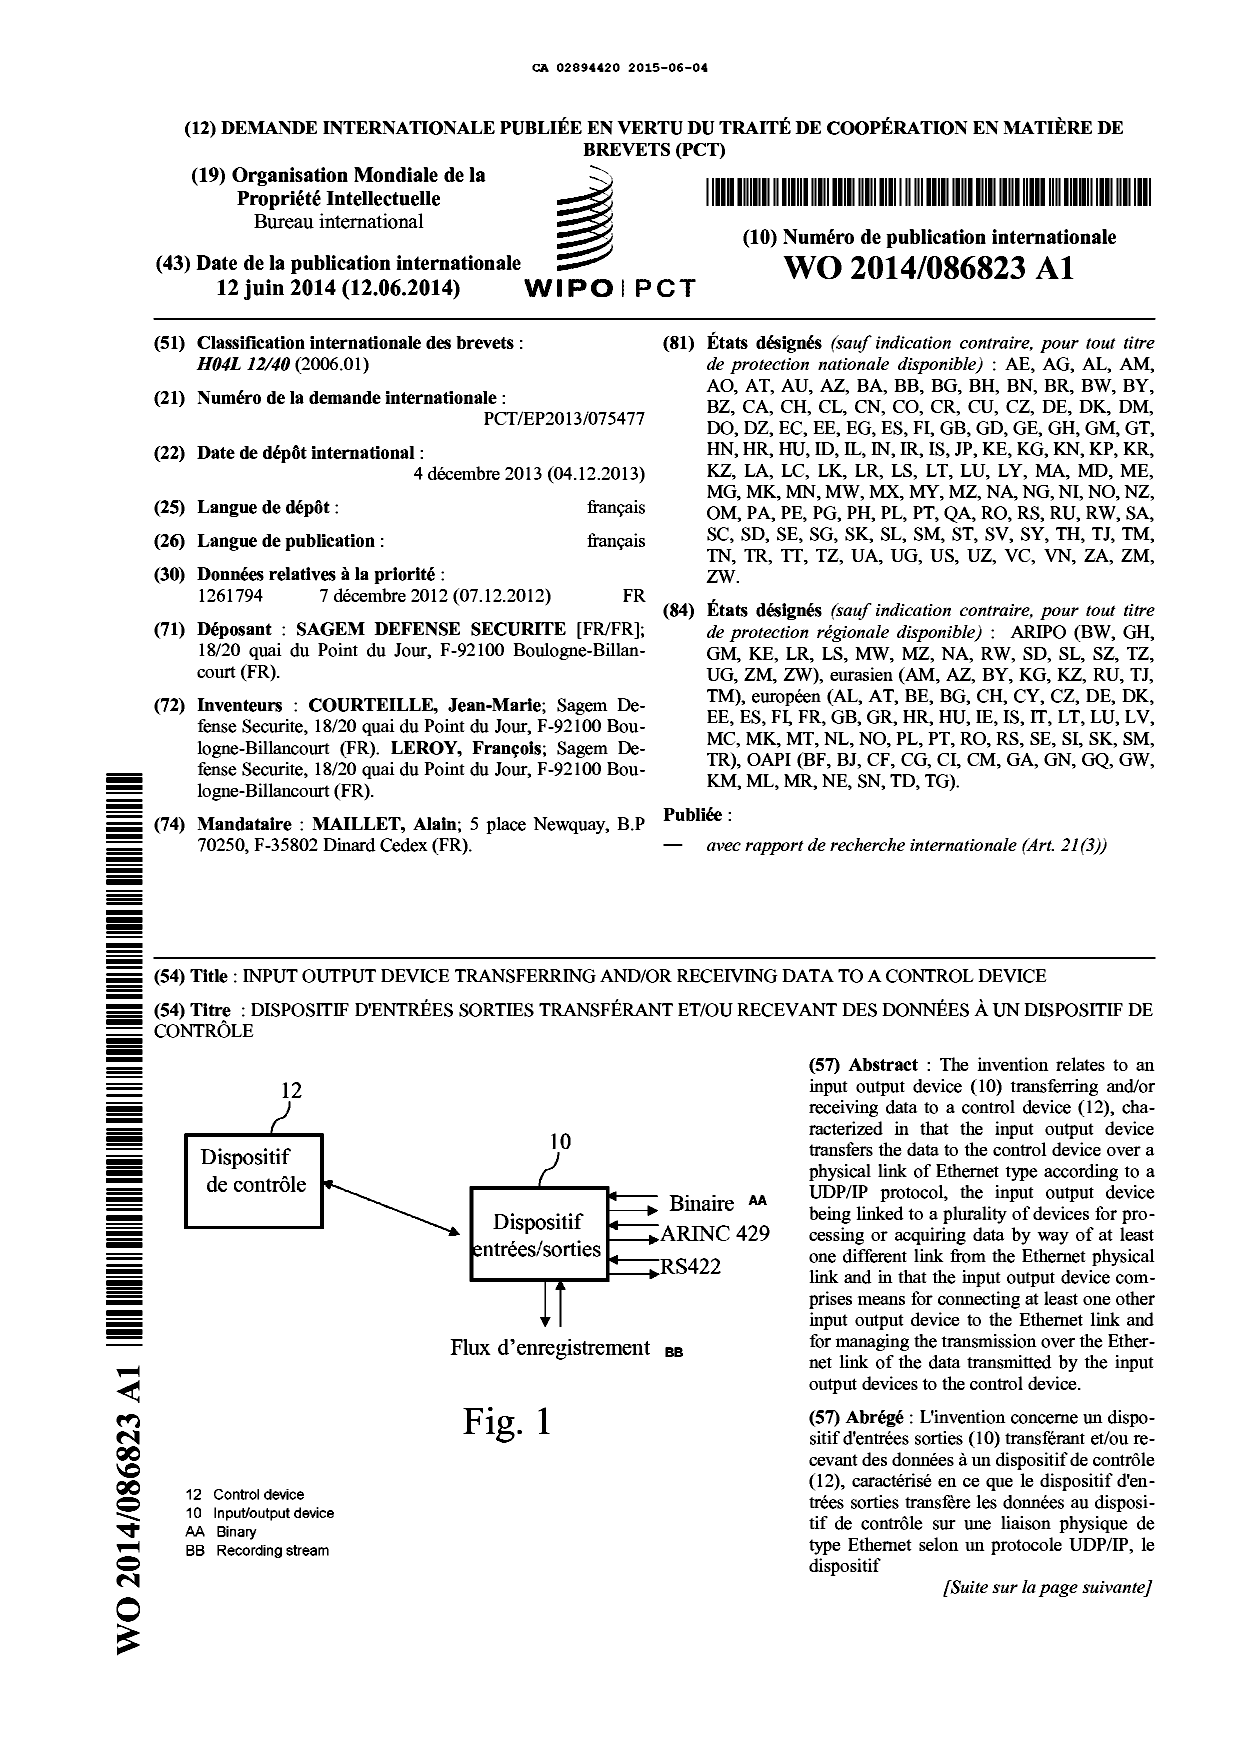 Document de brevet canadien 2894420. Modification - Abrégé 20150604. Image 1 de 2